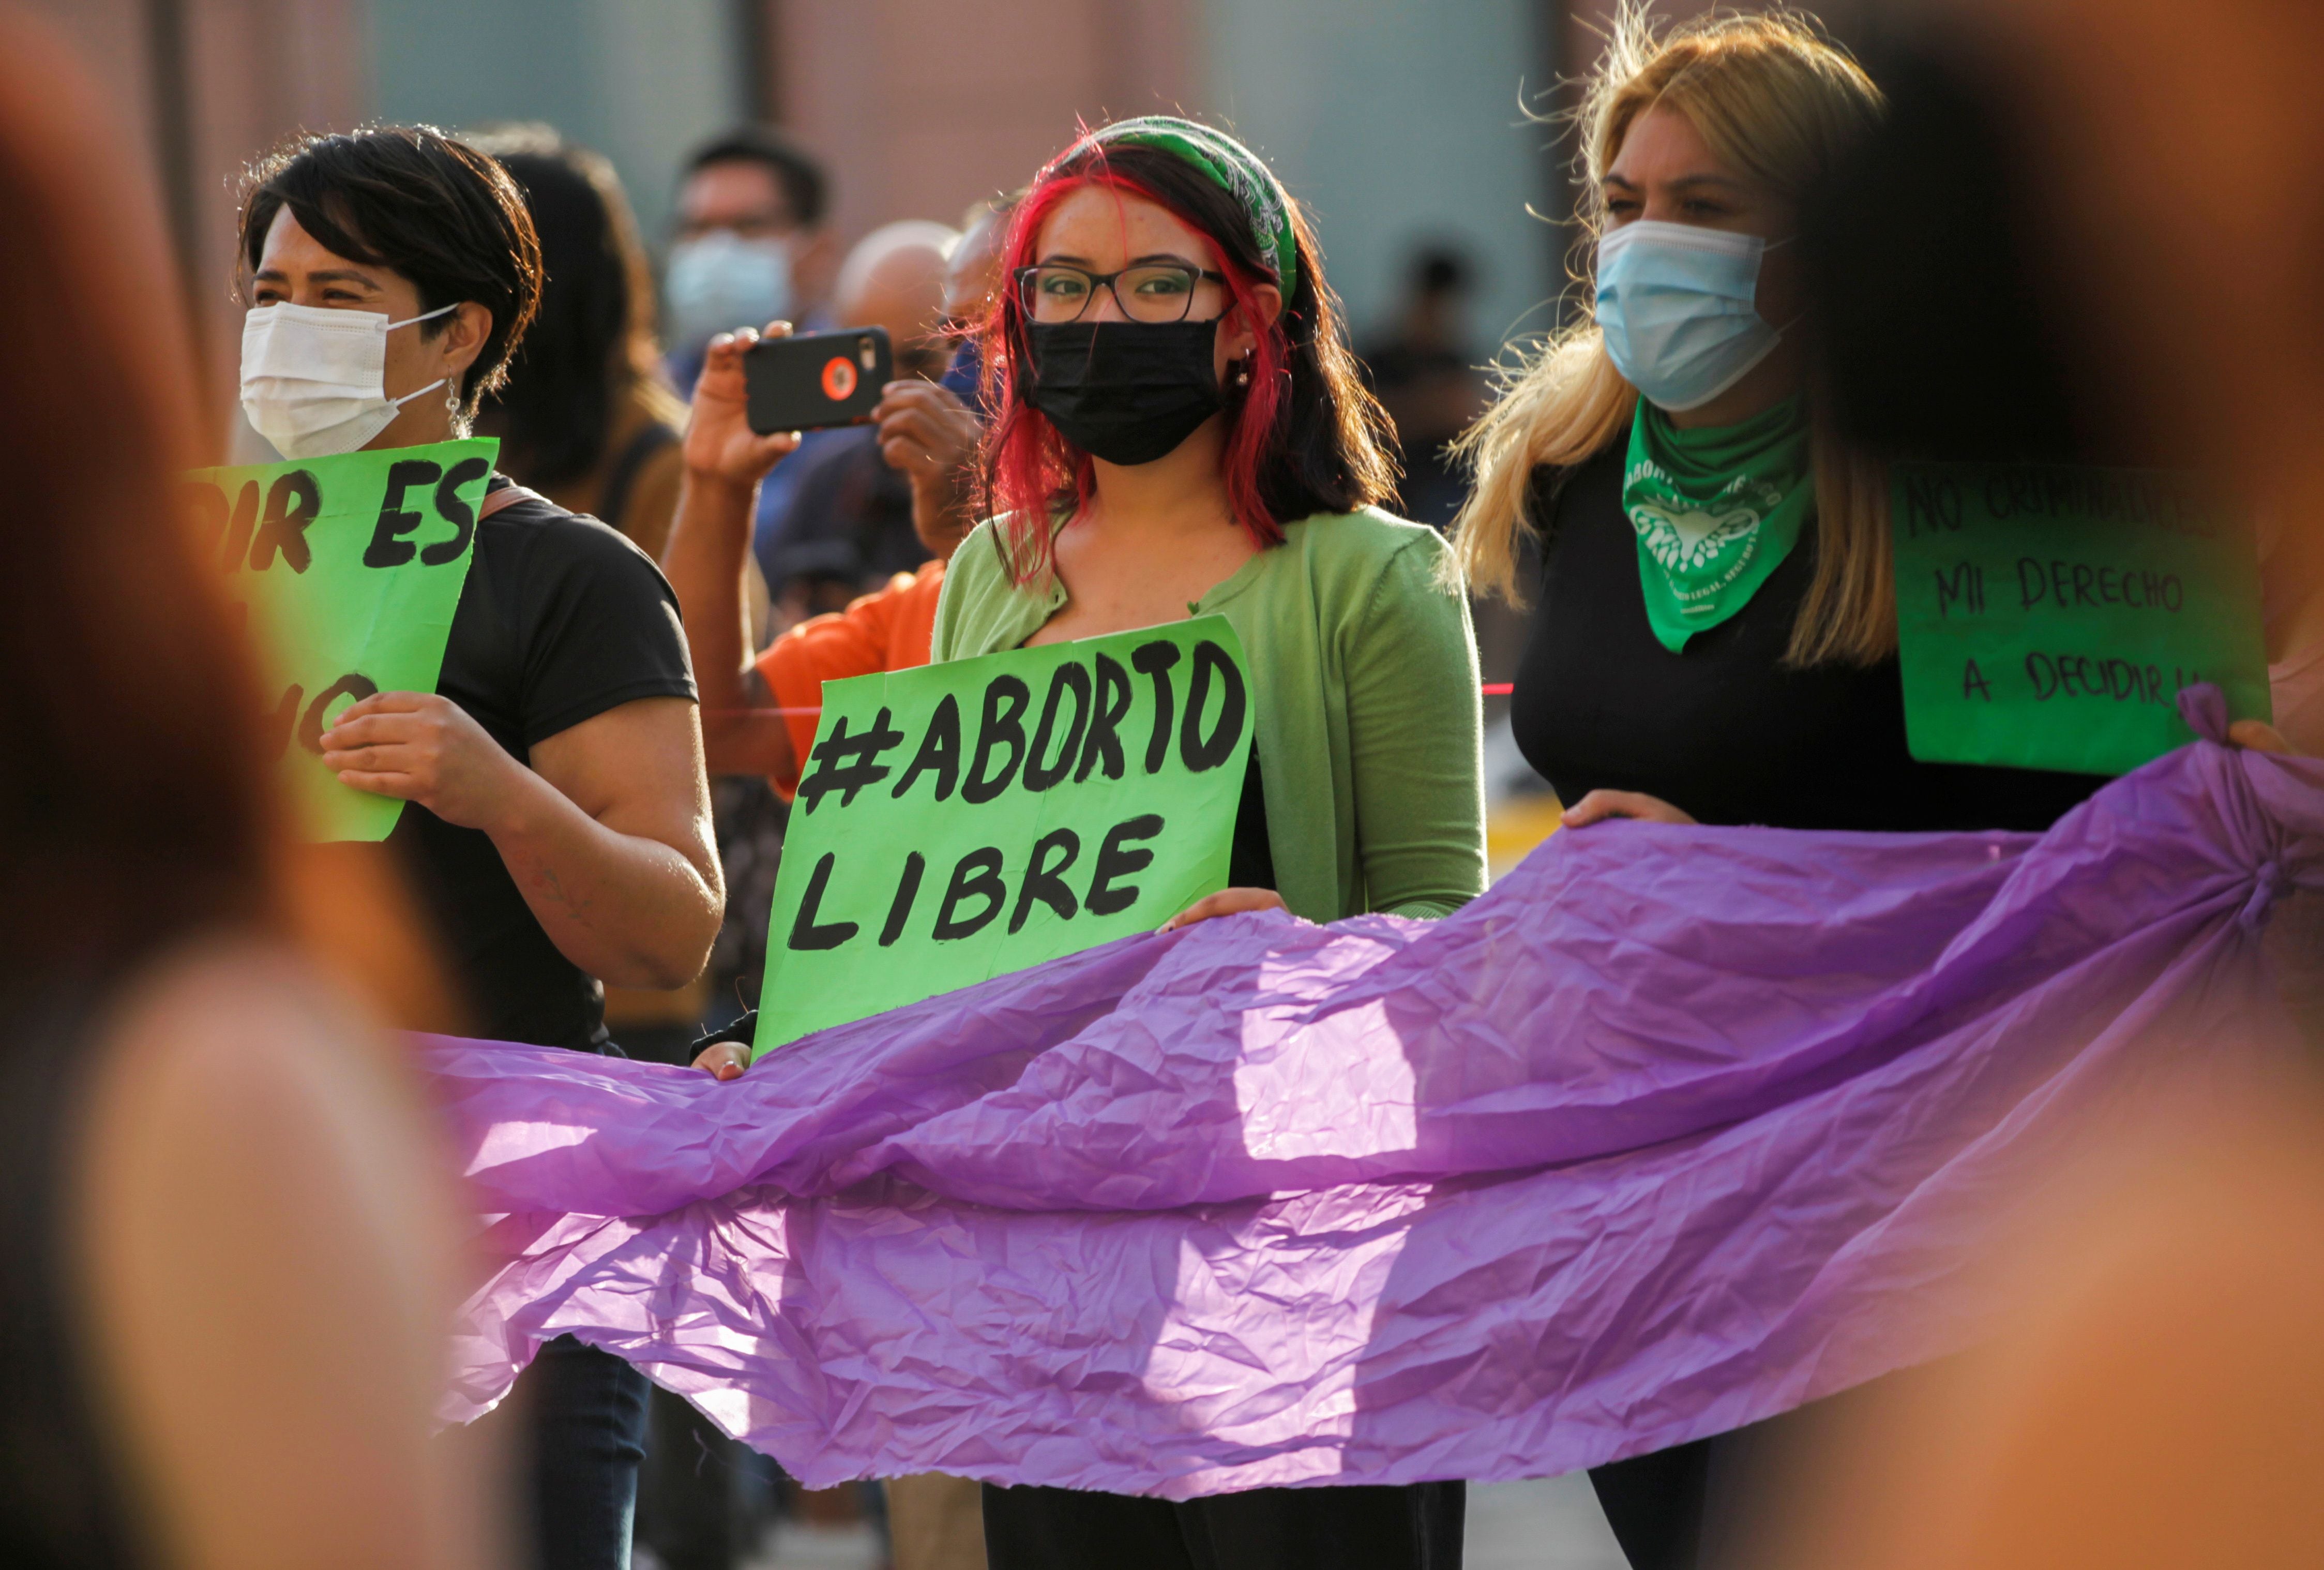  Movimiento Causa Justa conmemora avance en la libertad reproductiva con actos simbólicos - crédito Daniel Becerril/Reuters